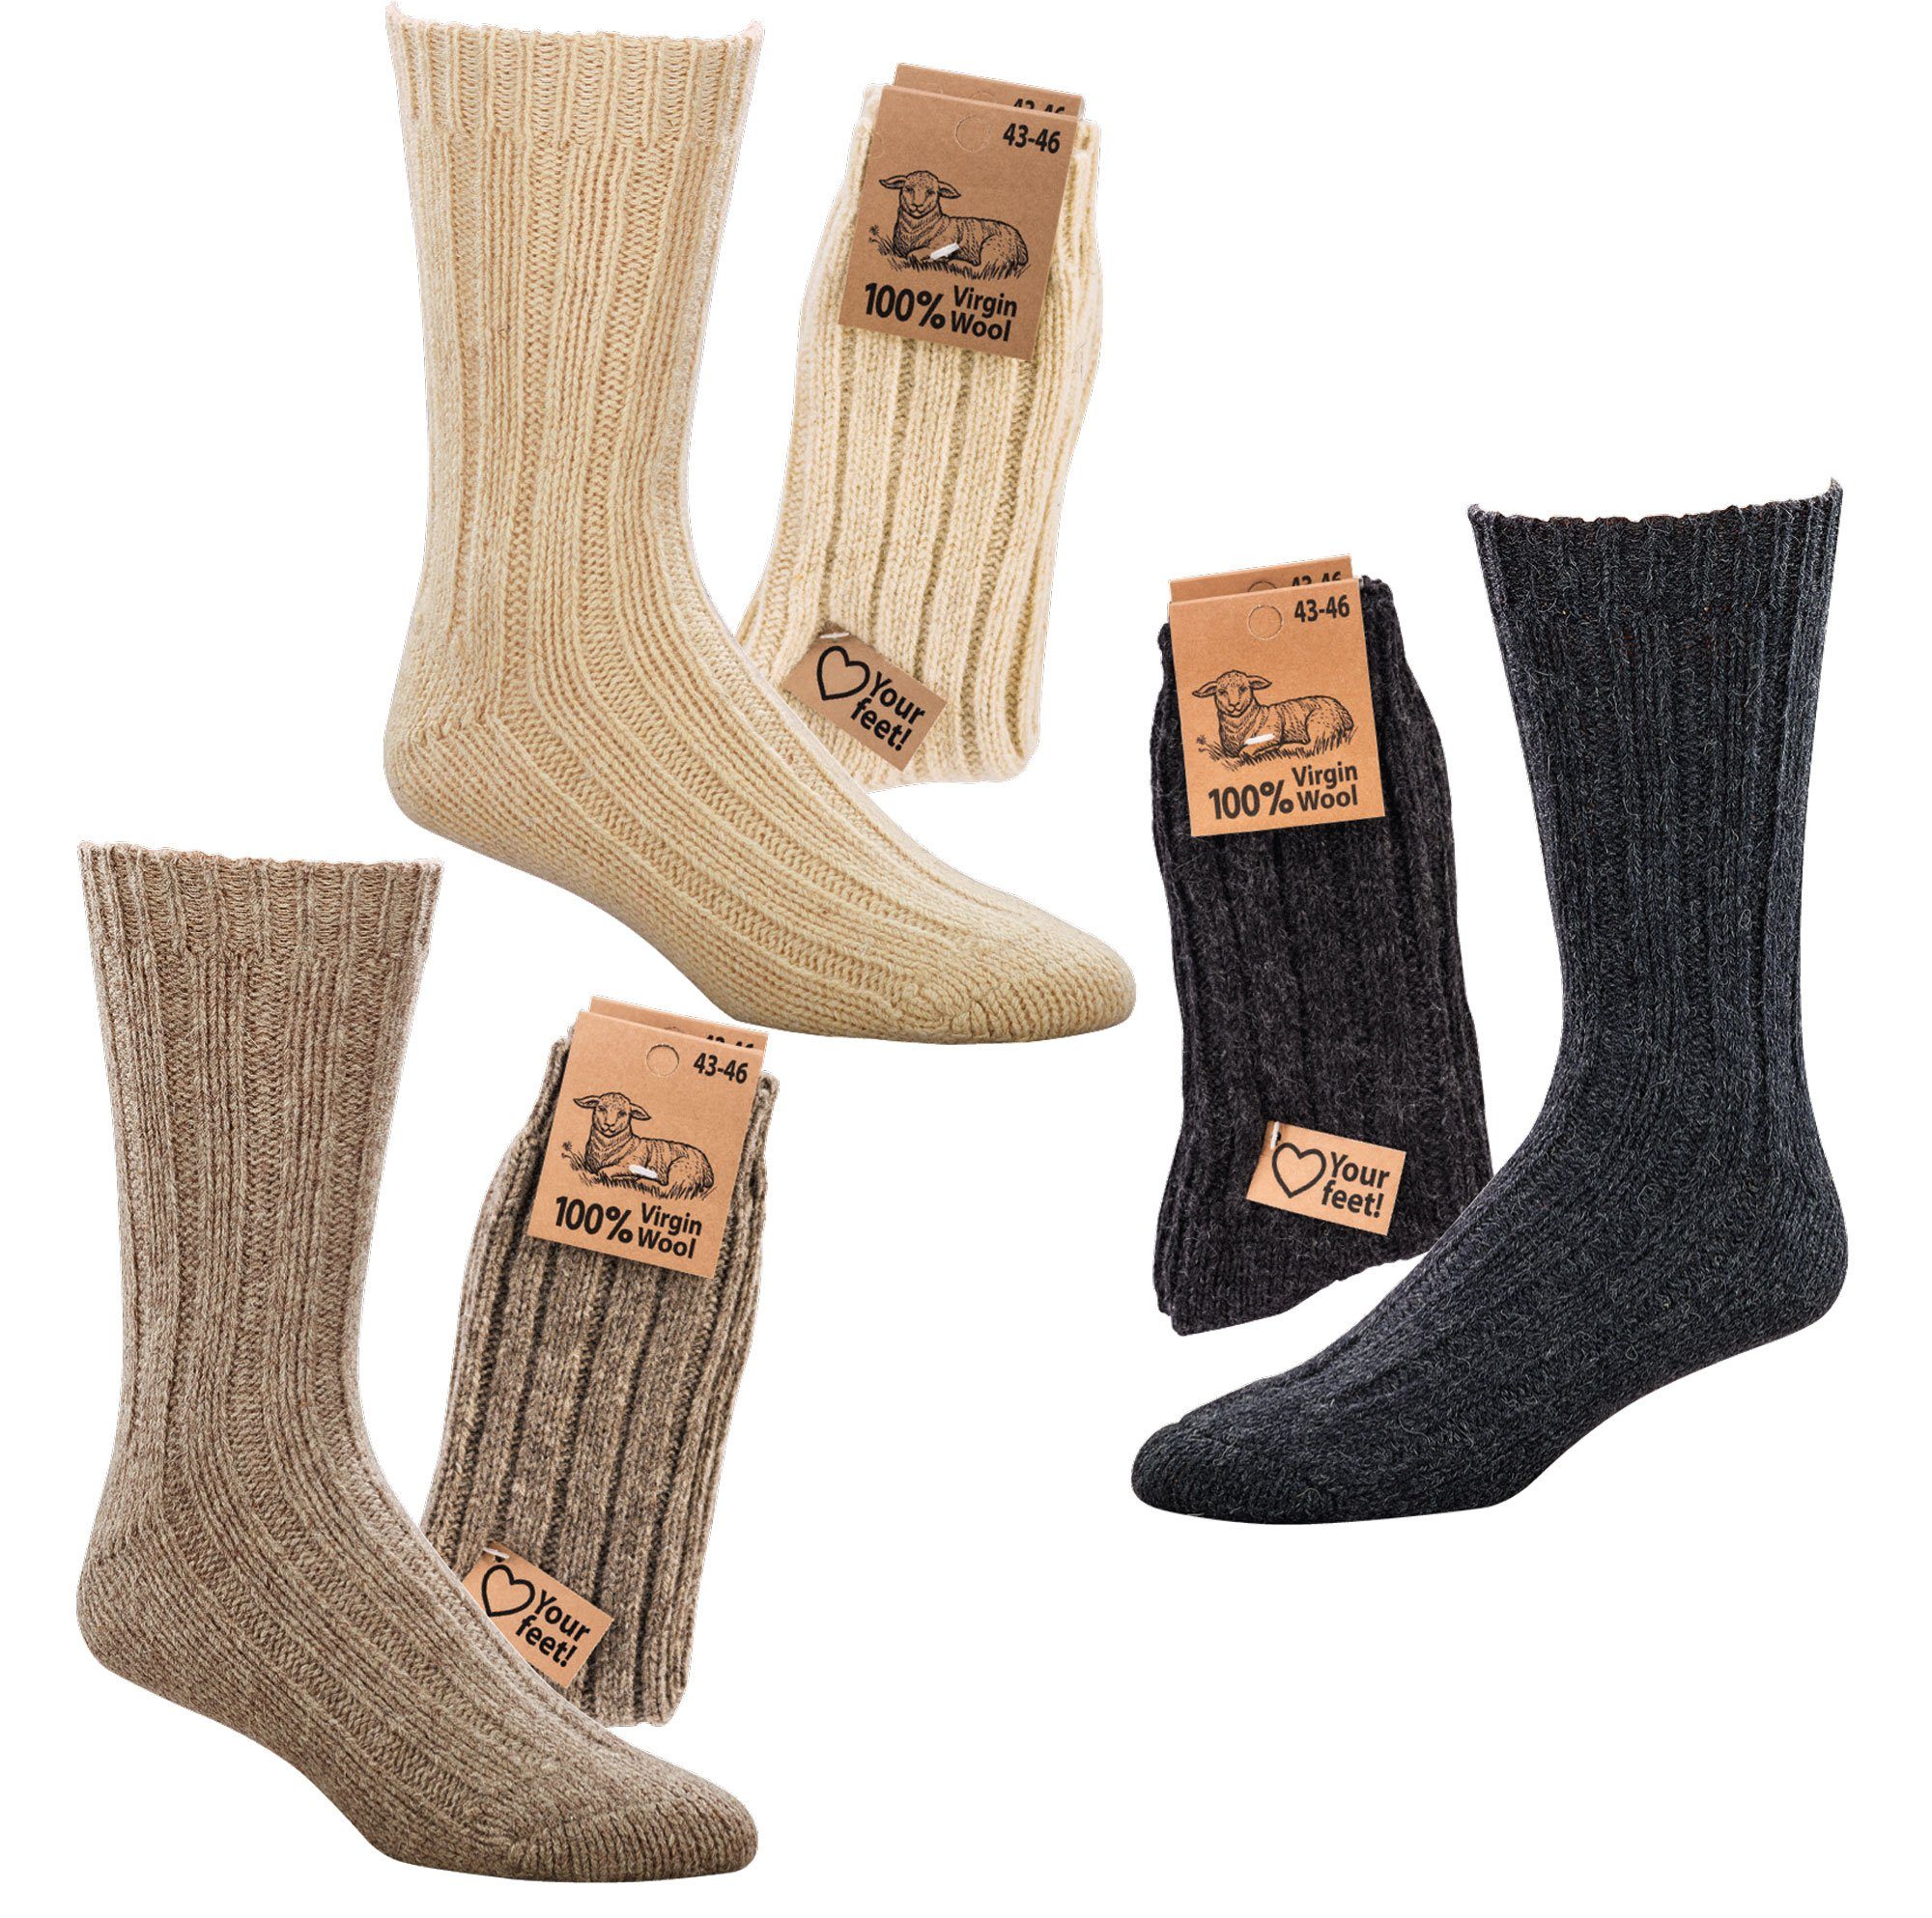 Wowerat Socken Warme Wollsocken 100% "Virgin Wool" Grobstrick Schafwolle (2 Paar)